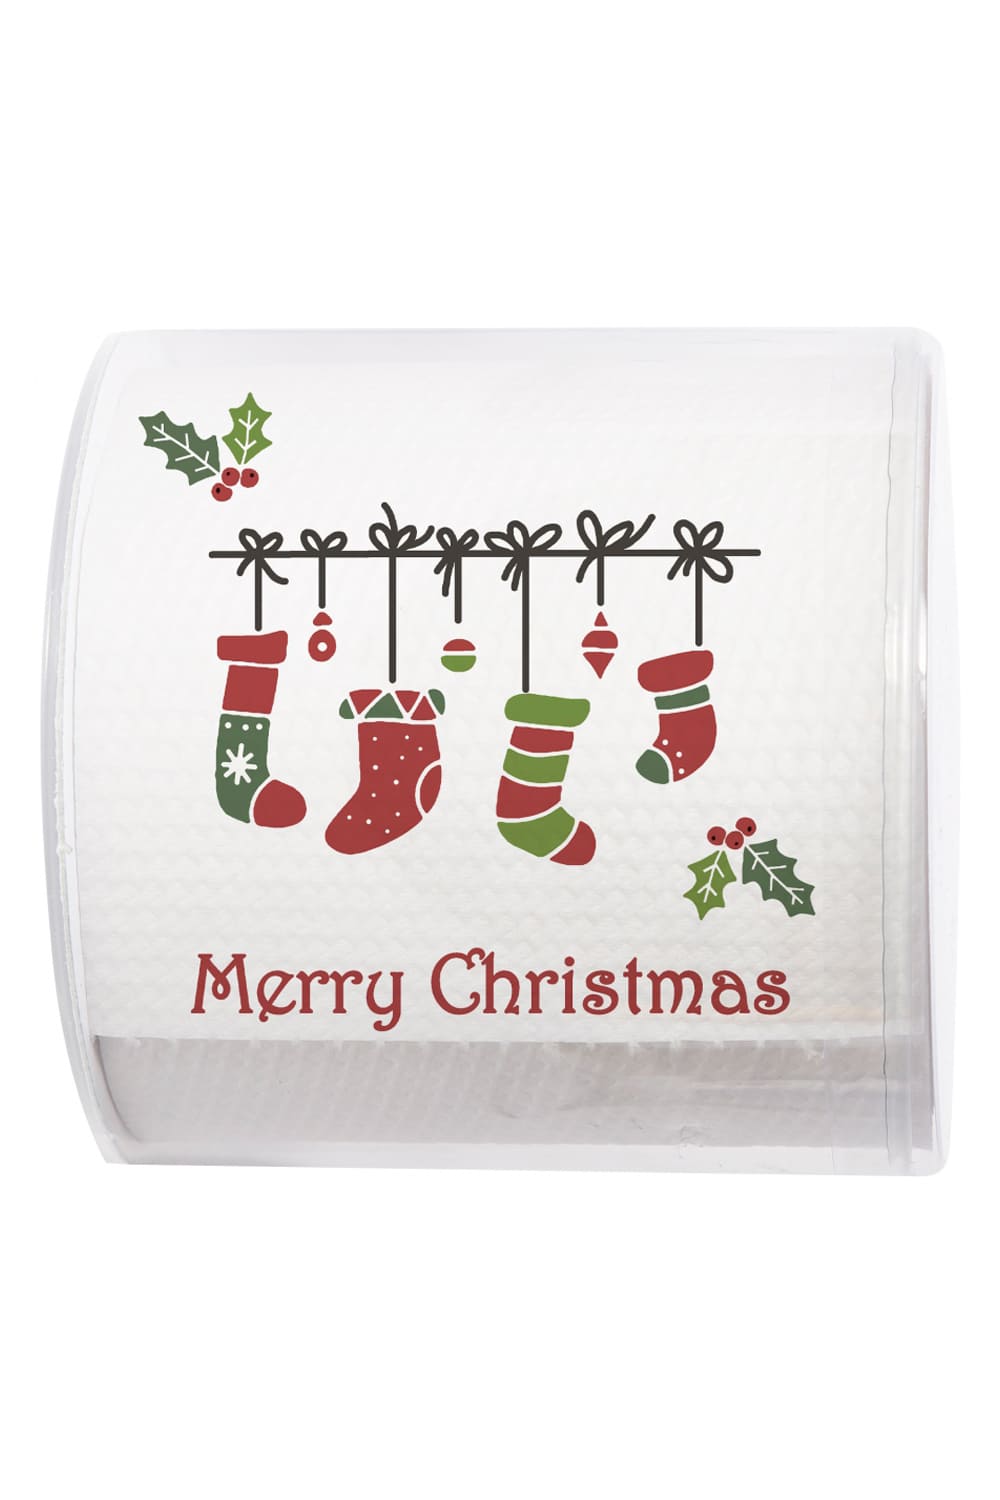 Dieses witzige Toilettenpapier sorgt bestimmt fuer die beste Unterhaltung auf dem Klo. Ideal als Geschenk zu Weihnachten, waehrend der Weihnachtszeit oder fuer eine kreative und lustige Dekoration fuer das Weihnachtsfest. Das witzige Christmas WC-Papier ist das Perfektes Weihnachtsgsgeschenk mit Kreativitaet. 